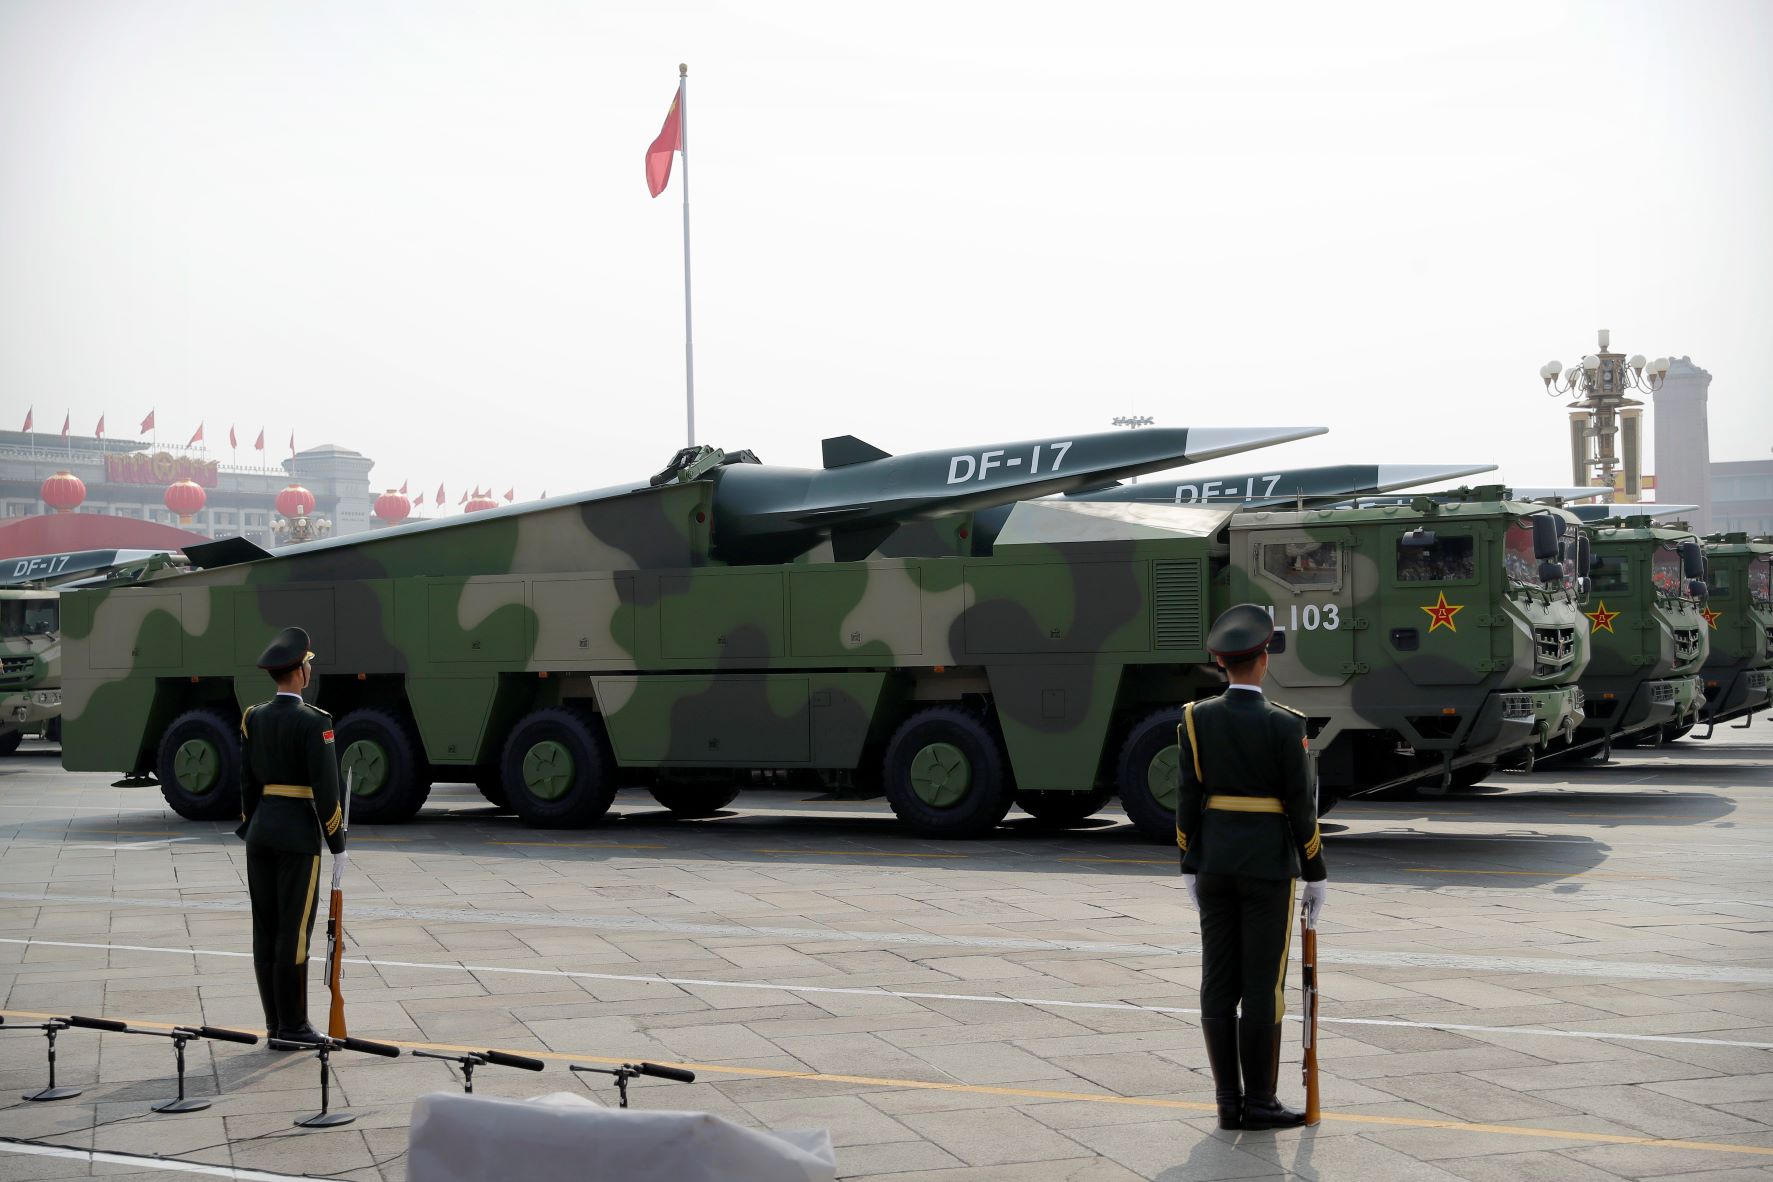 شاحنات تحمل صواريخ "دي إف- 17" الأسرع من الصوت، أثناء عرض عسكري للجيش الأحمر الصيني في الذكرى السبعين لتأسيس الجمهورية الشيوعية في بكين